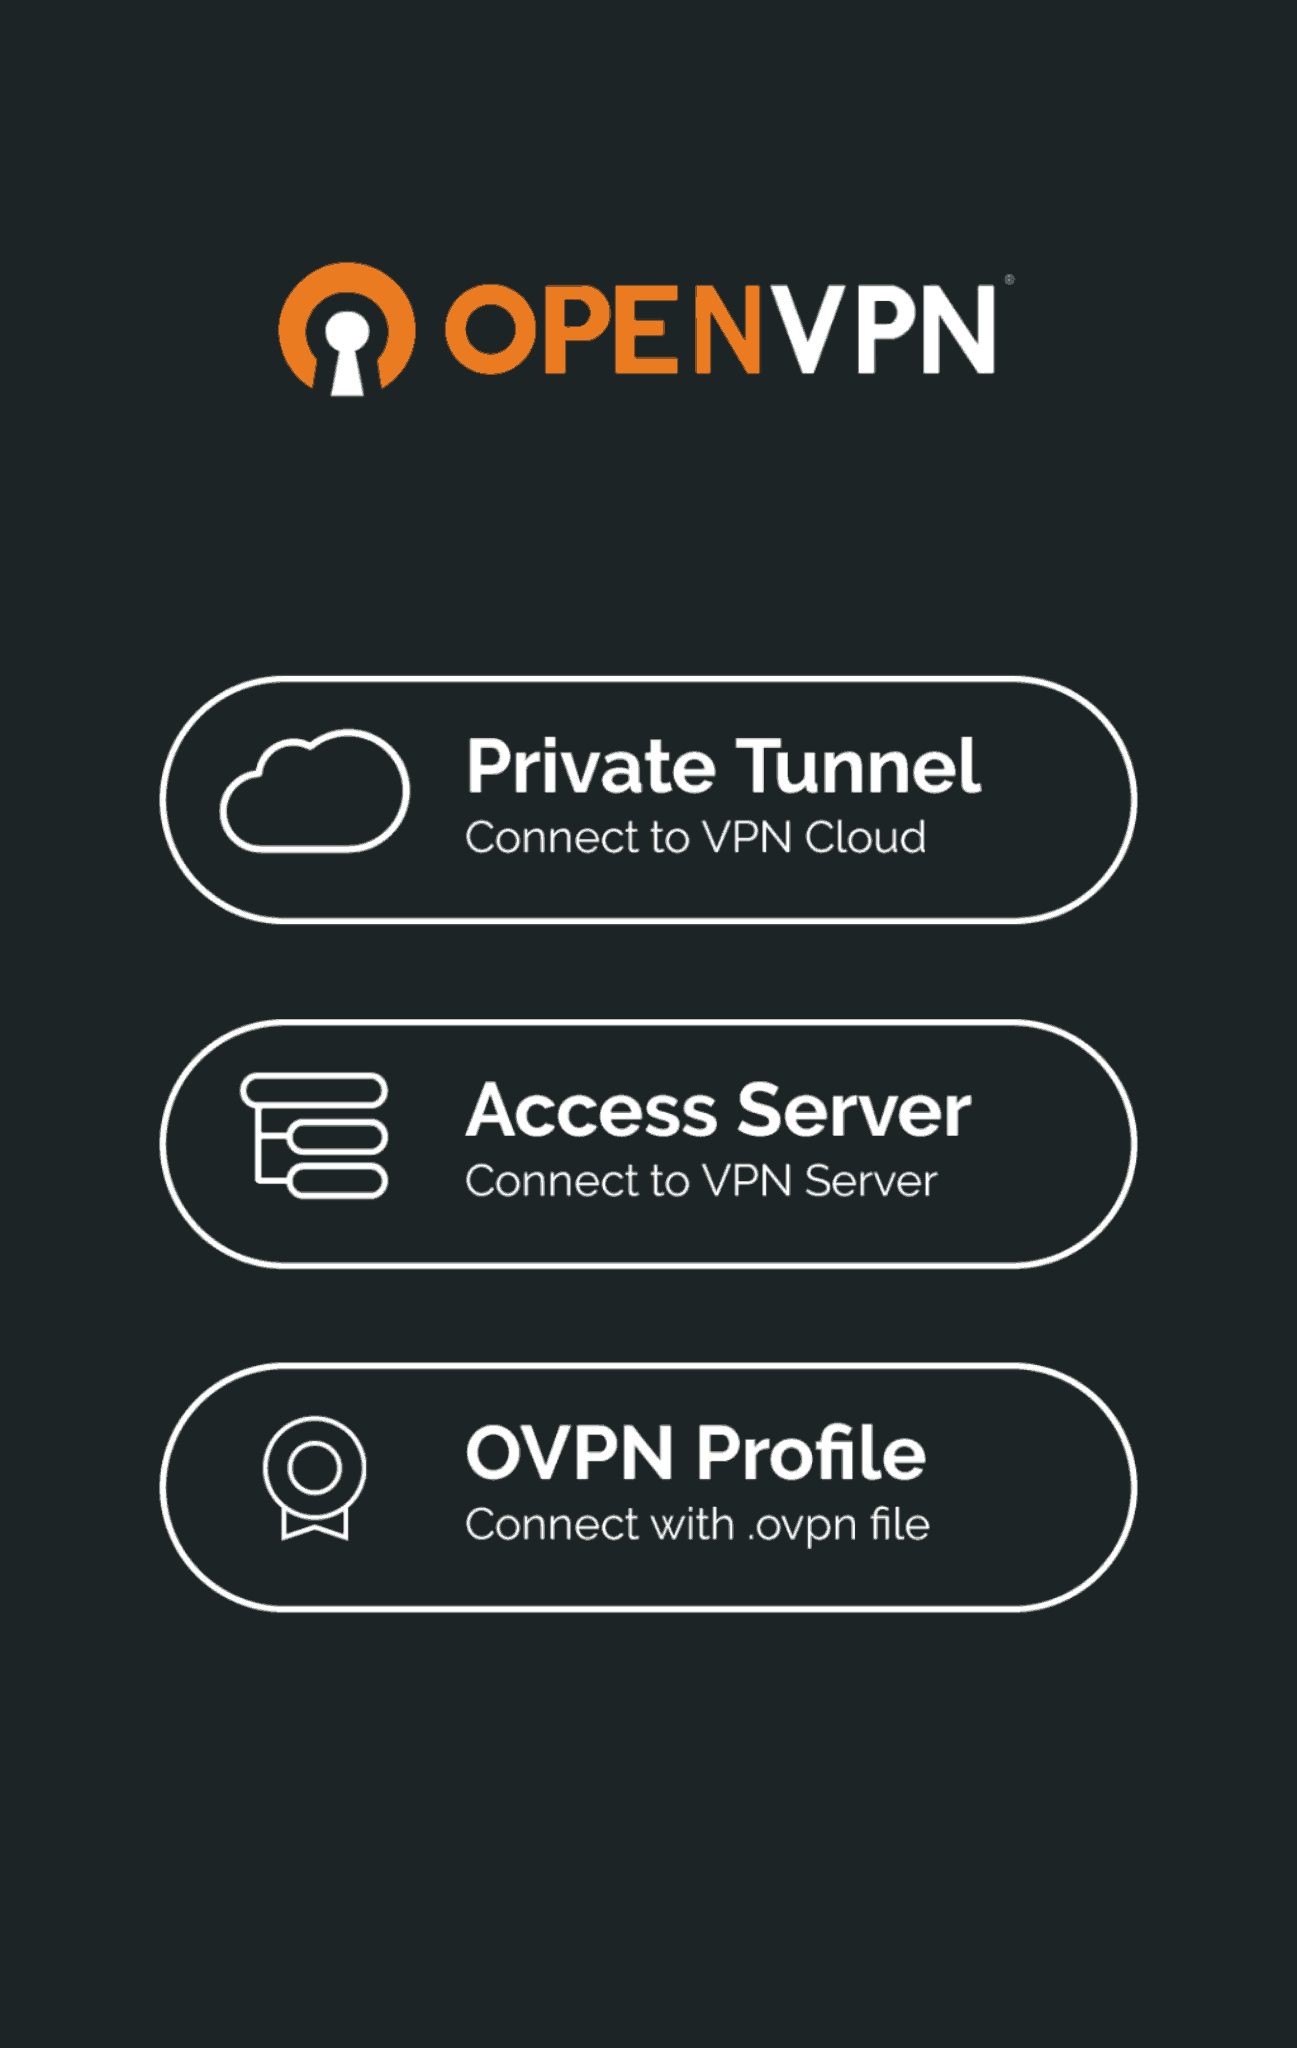 openvpn always on android